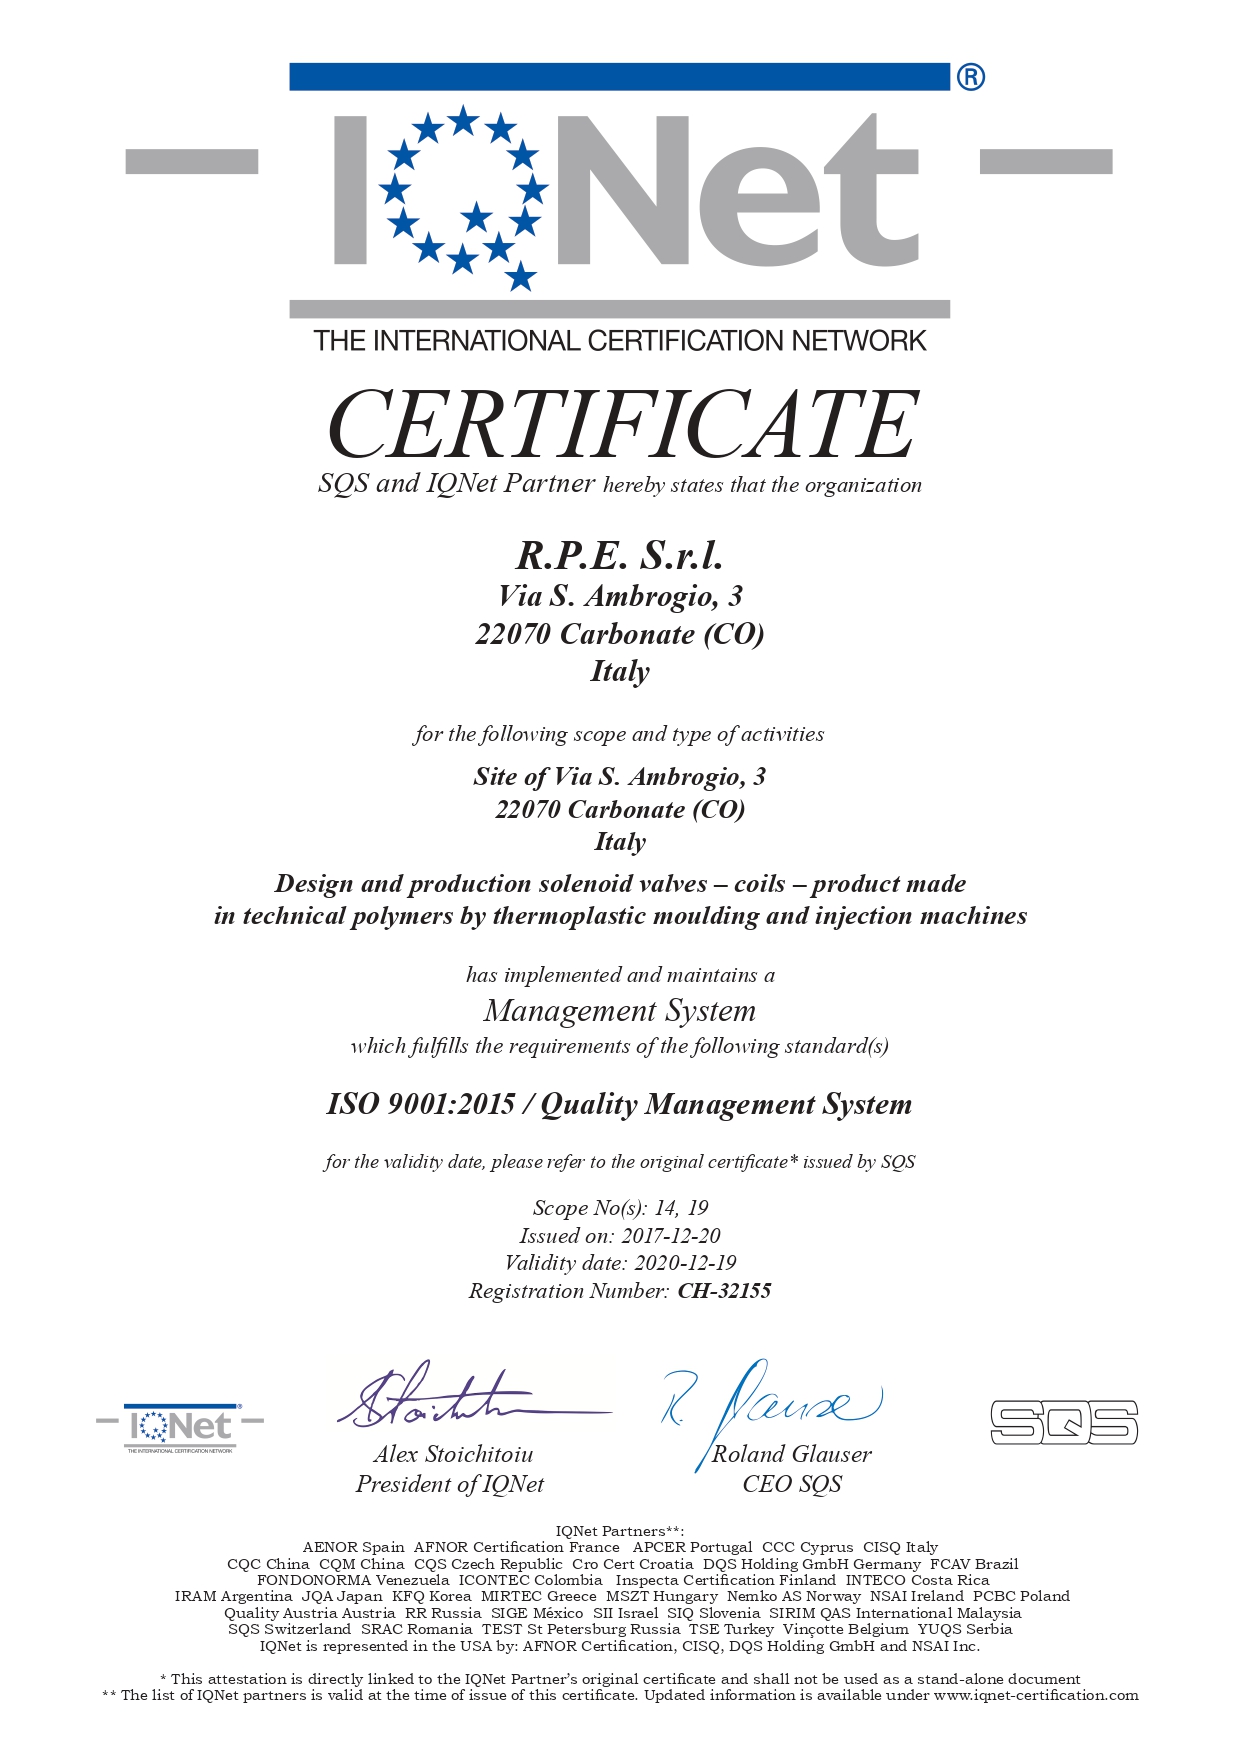 RPE, ISO 9001:2015